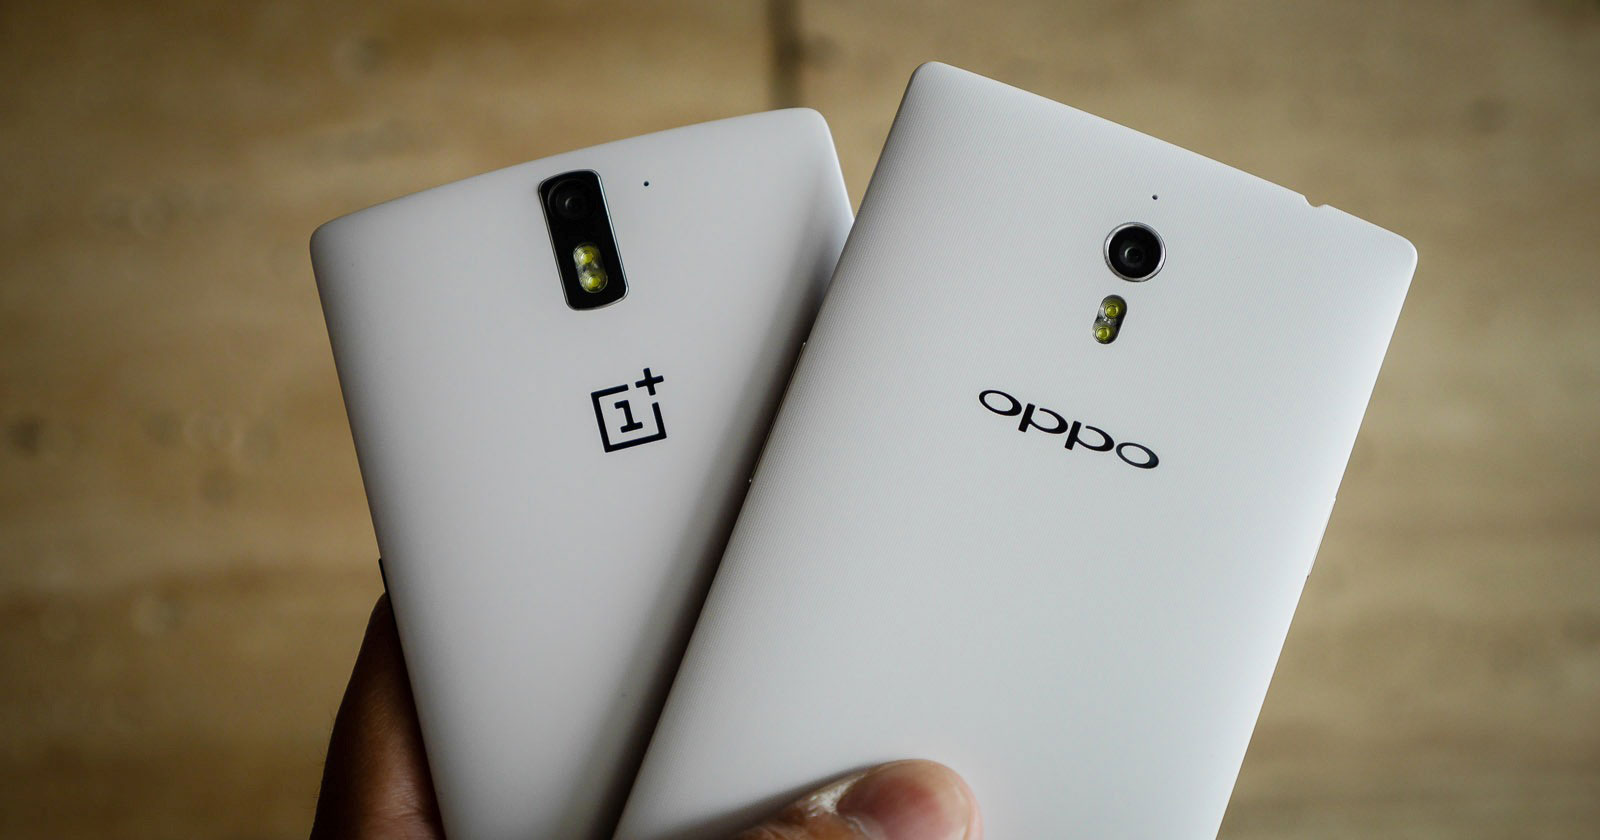 อย่างกะฝาแฝด!!! เผยรายละเอียด Oppo A30po ในประเทศจีน รายละเอียดเหมือนกับ OnePlus X อย่างกับแกะ !!!